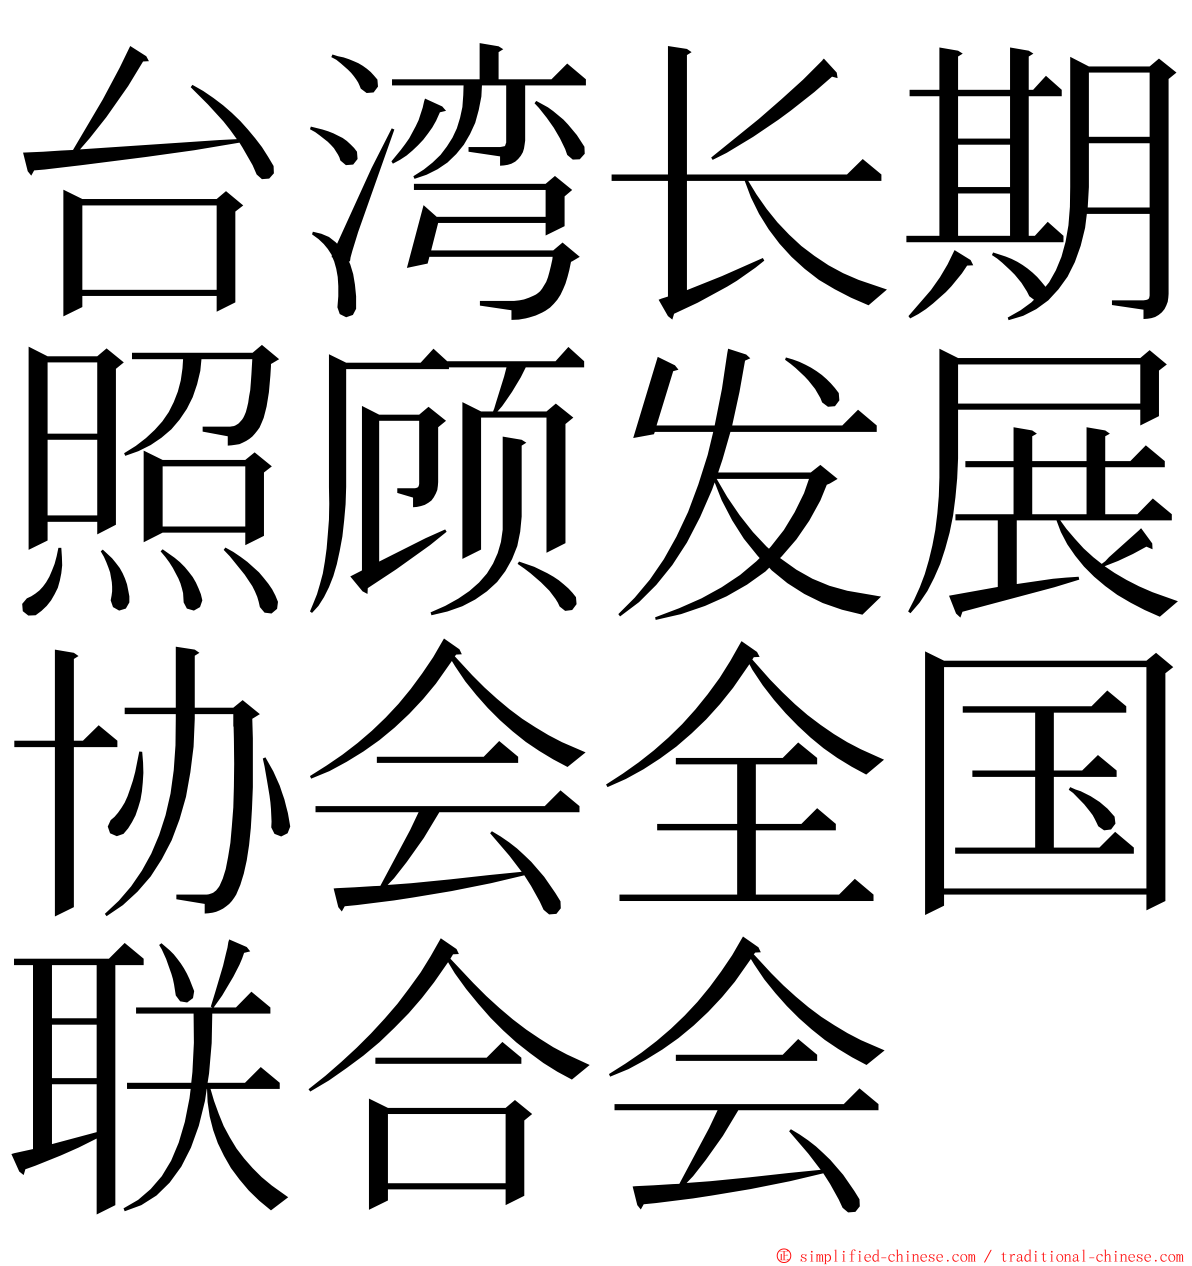 台湾长期照顾发展协会全国联合会 ming font